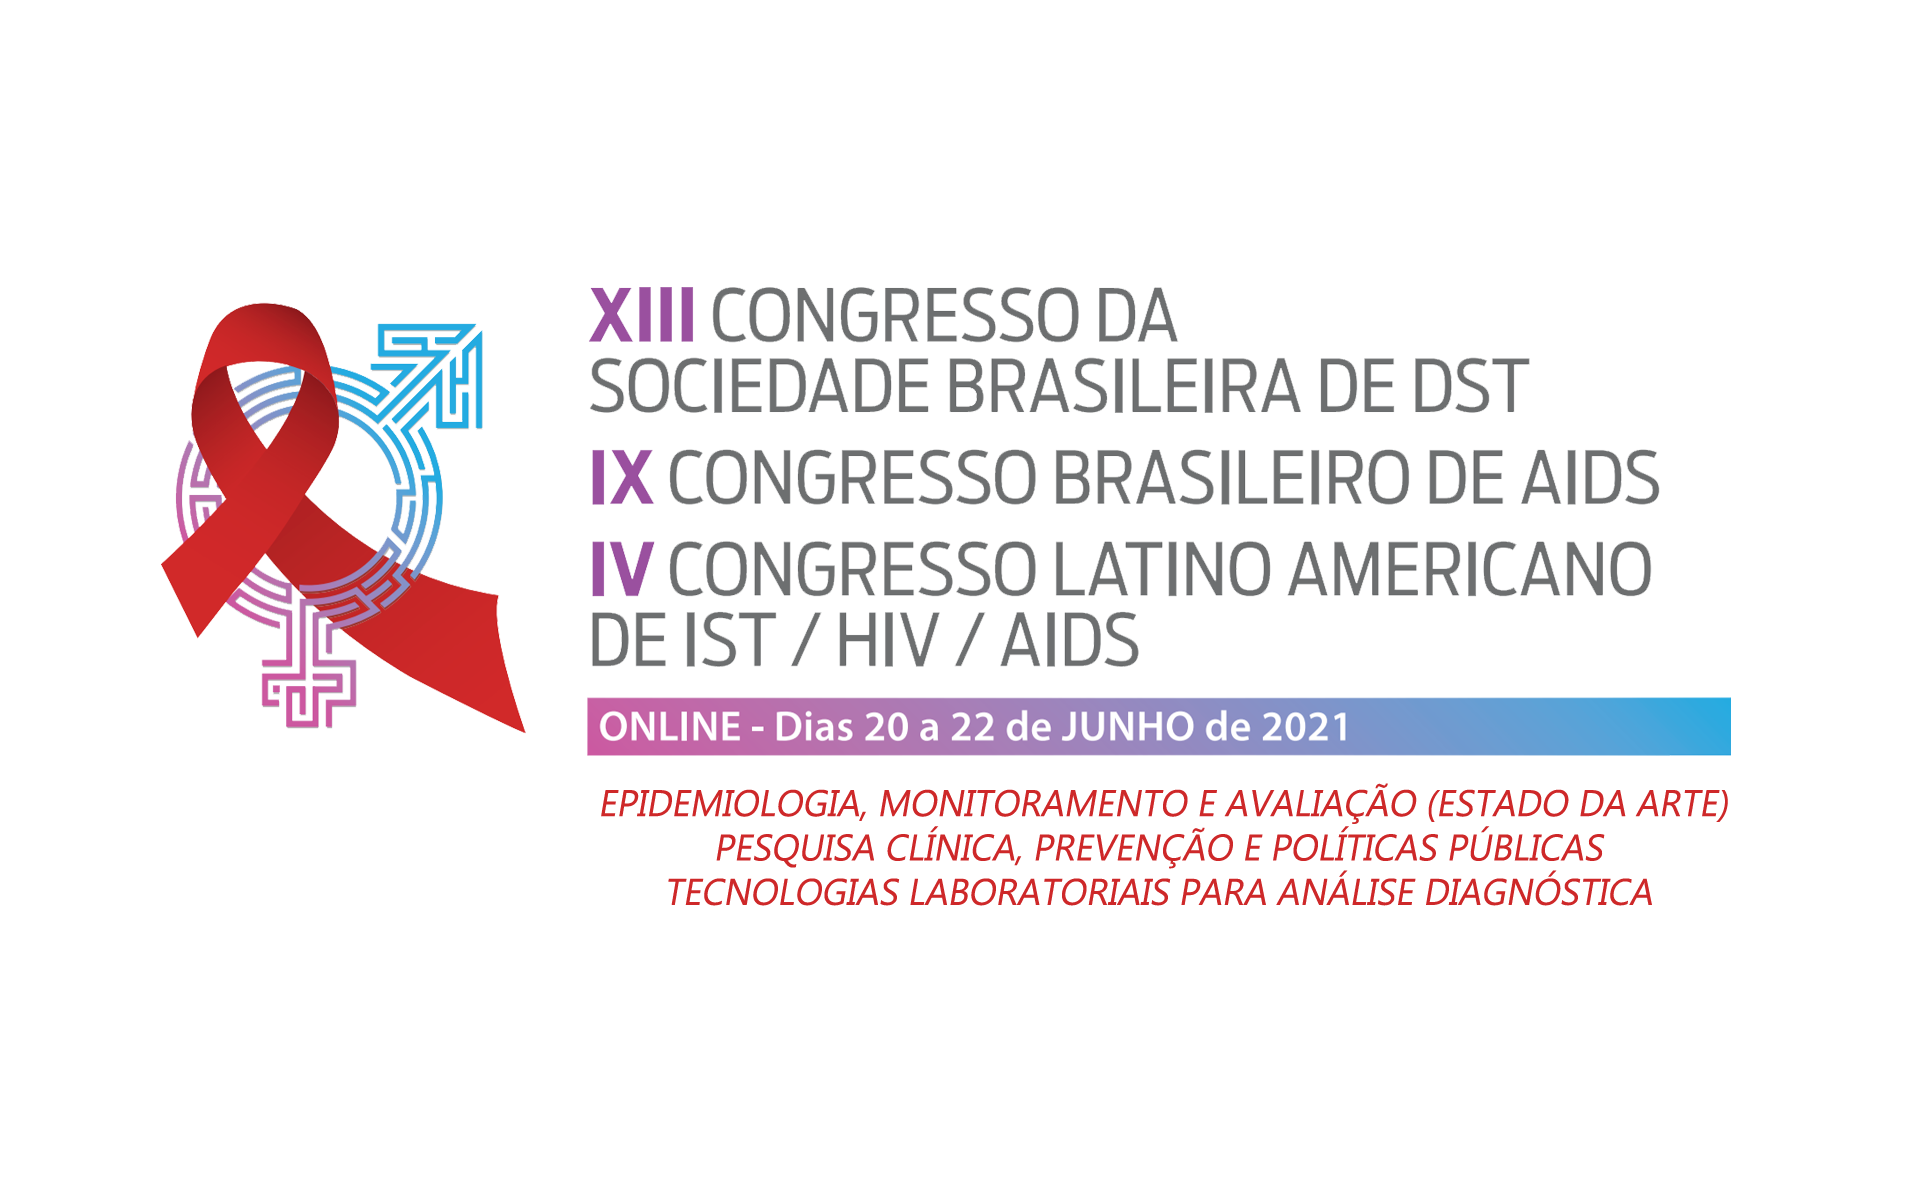 XIII Congresso Brasileiro da Sociedade Brasileira de DST,  IX Congresso Brasileiro de AIDS e IV Congresso Latino Americano de IST / HIV / Aids"